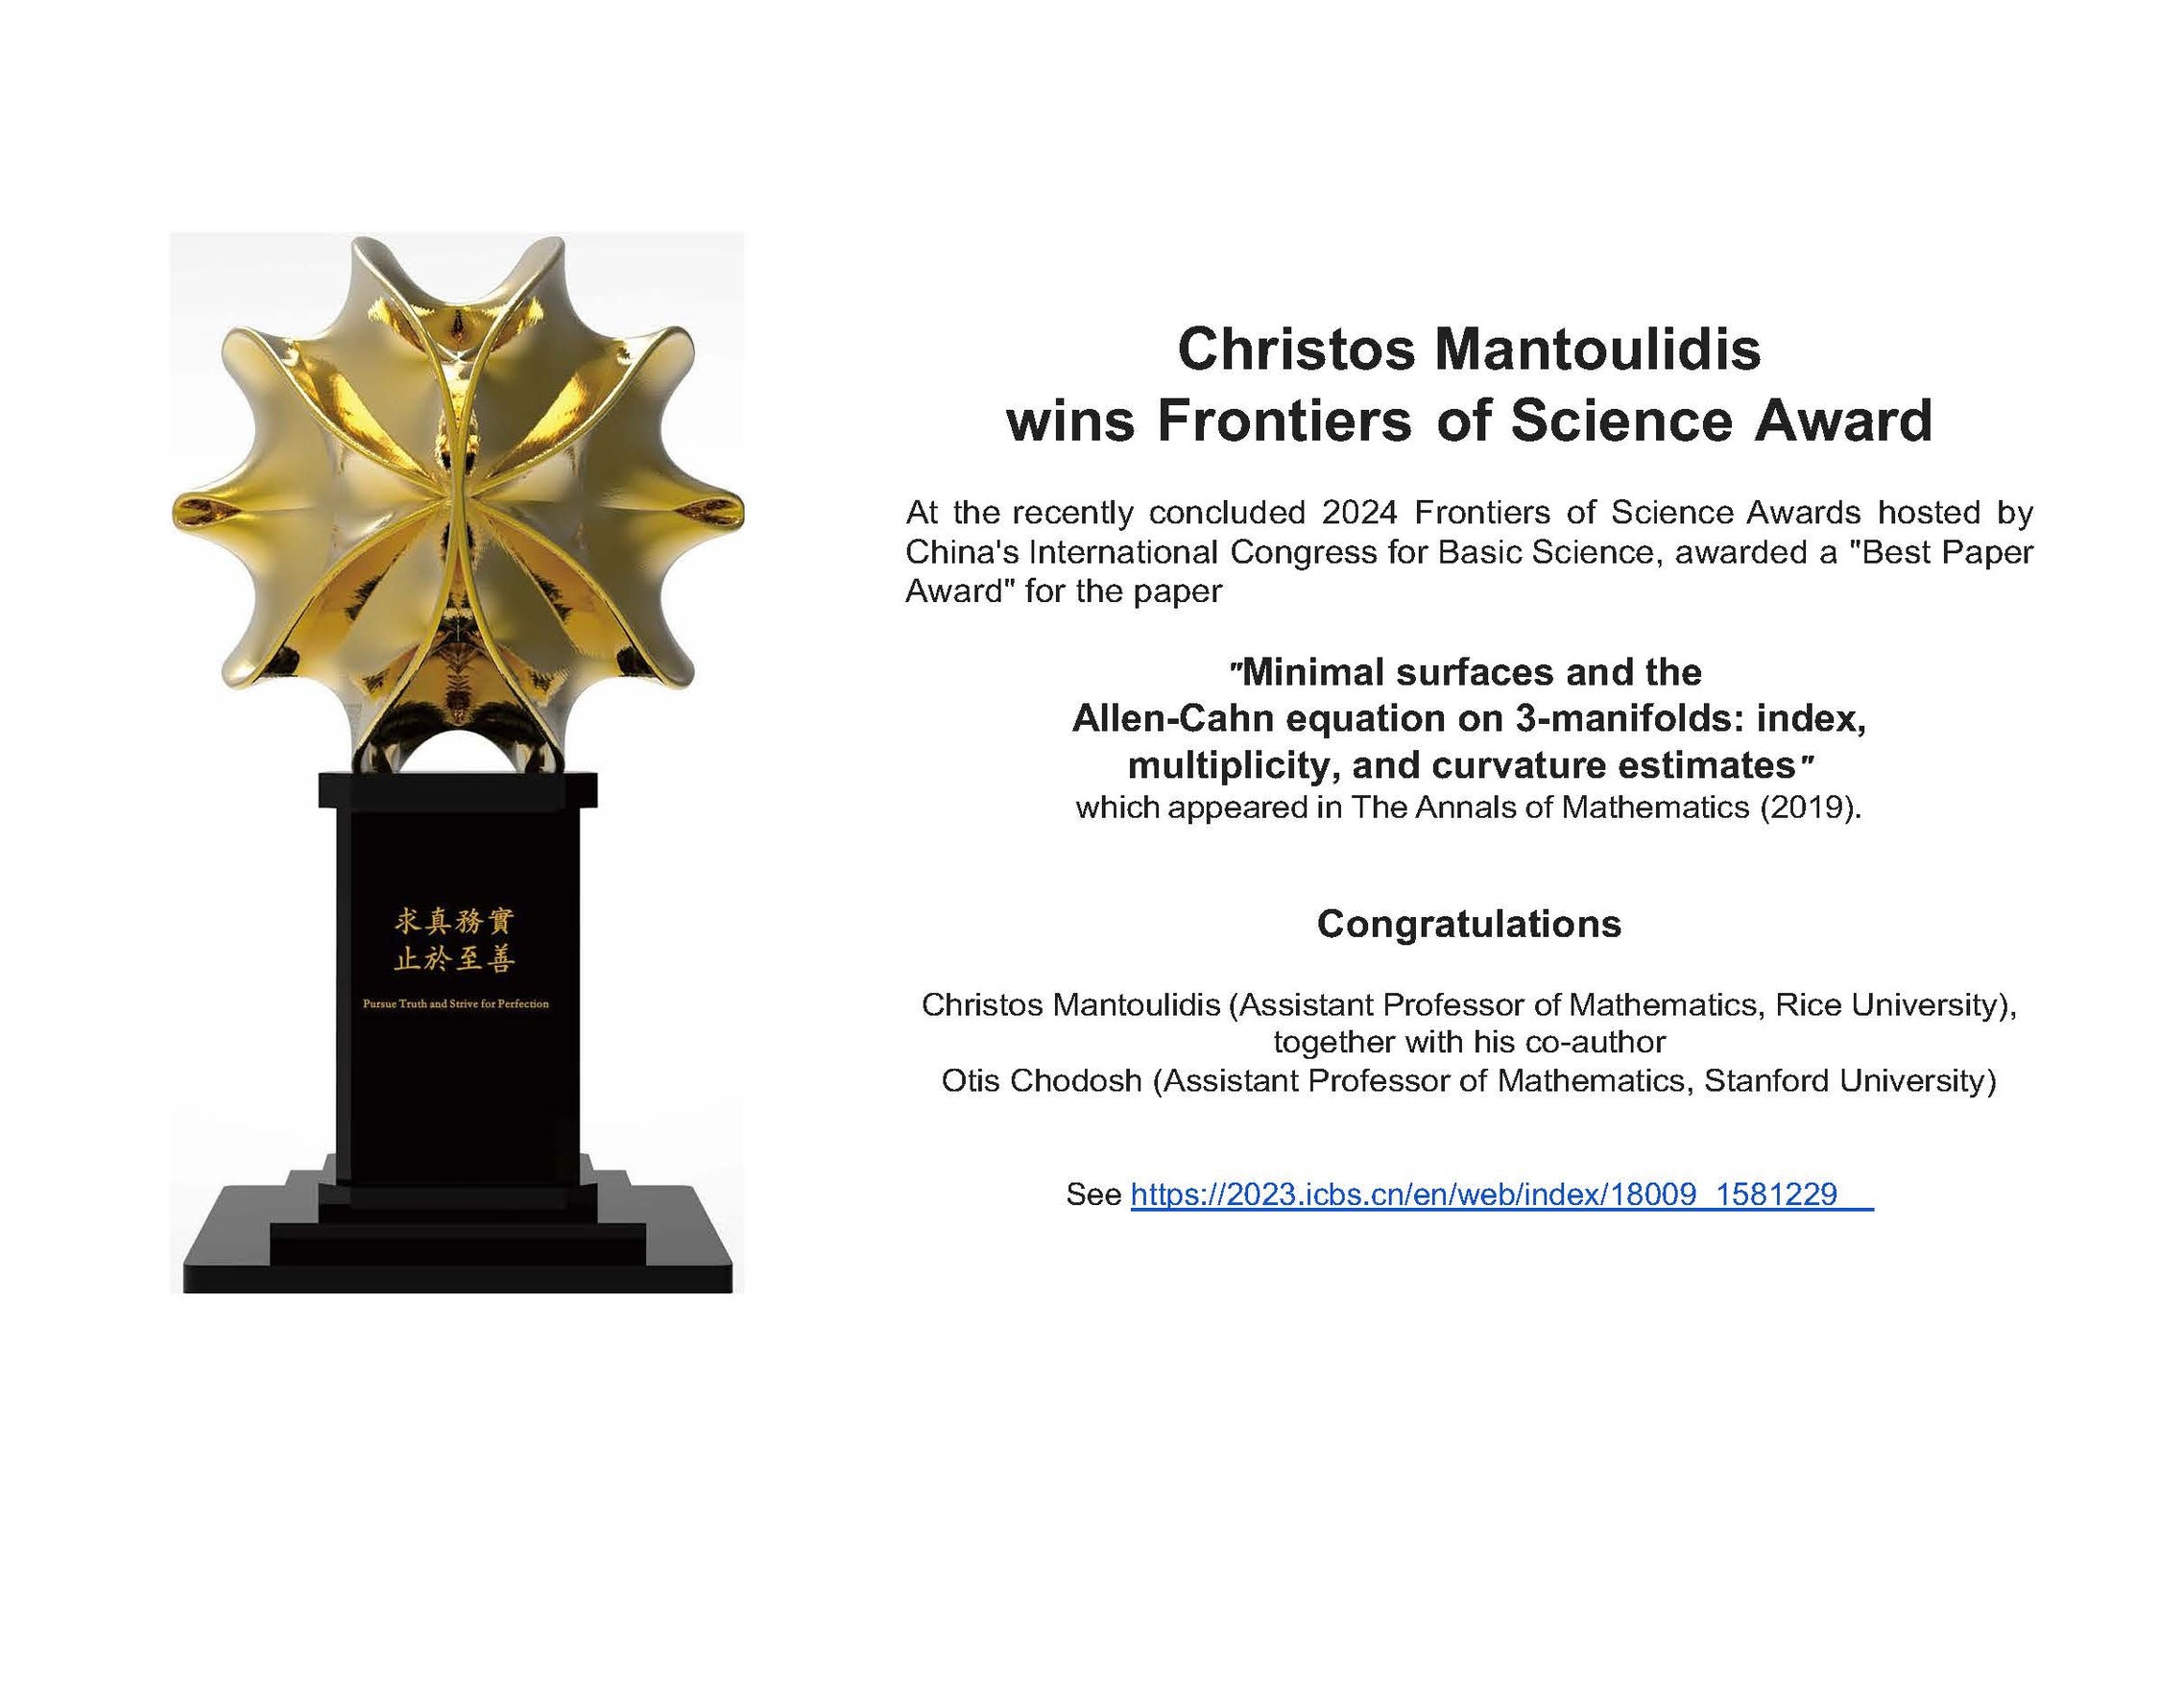 Christo's prize